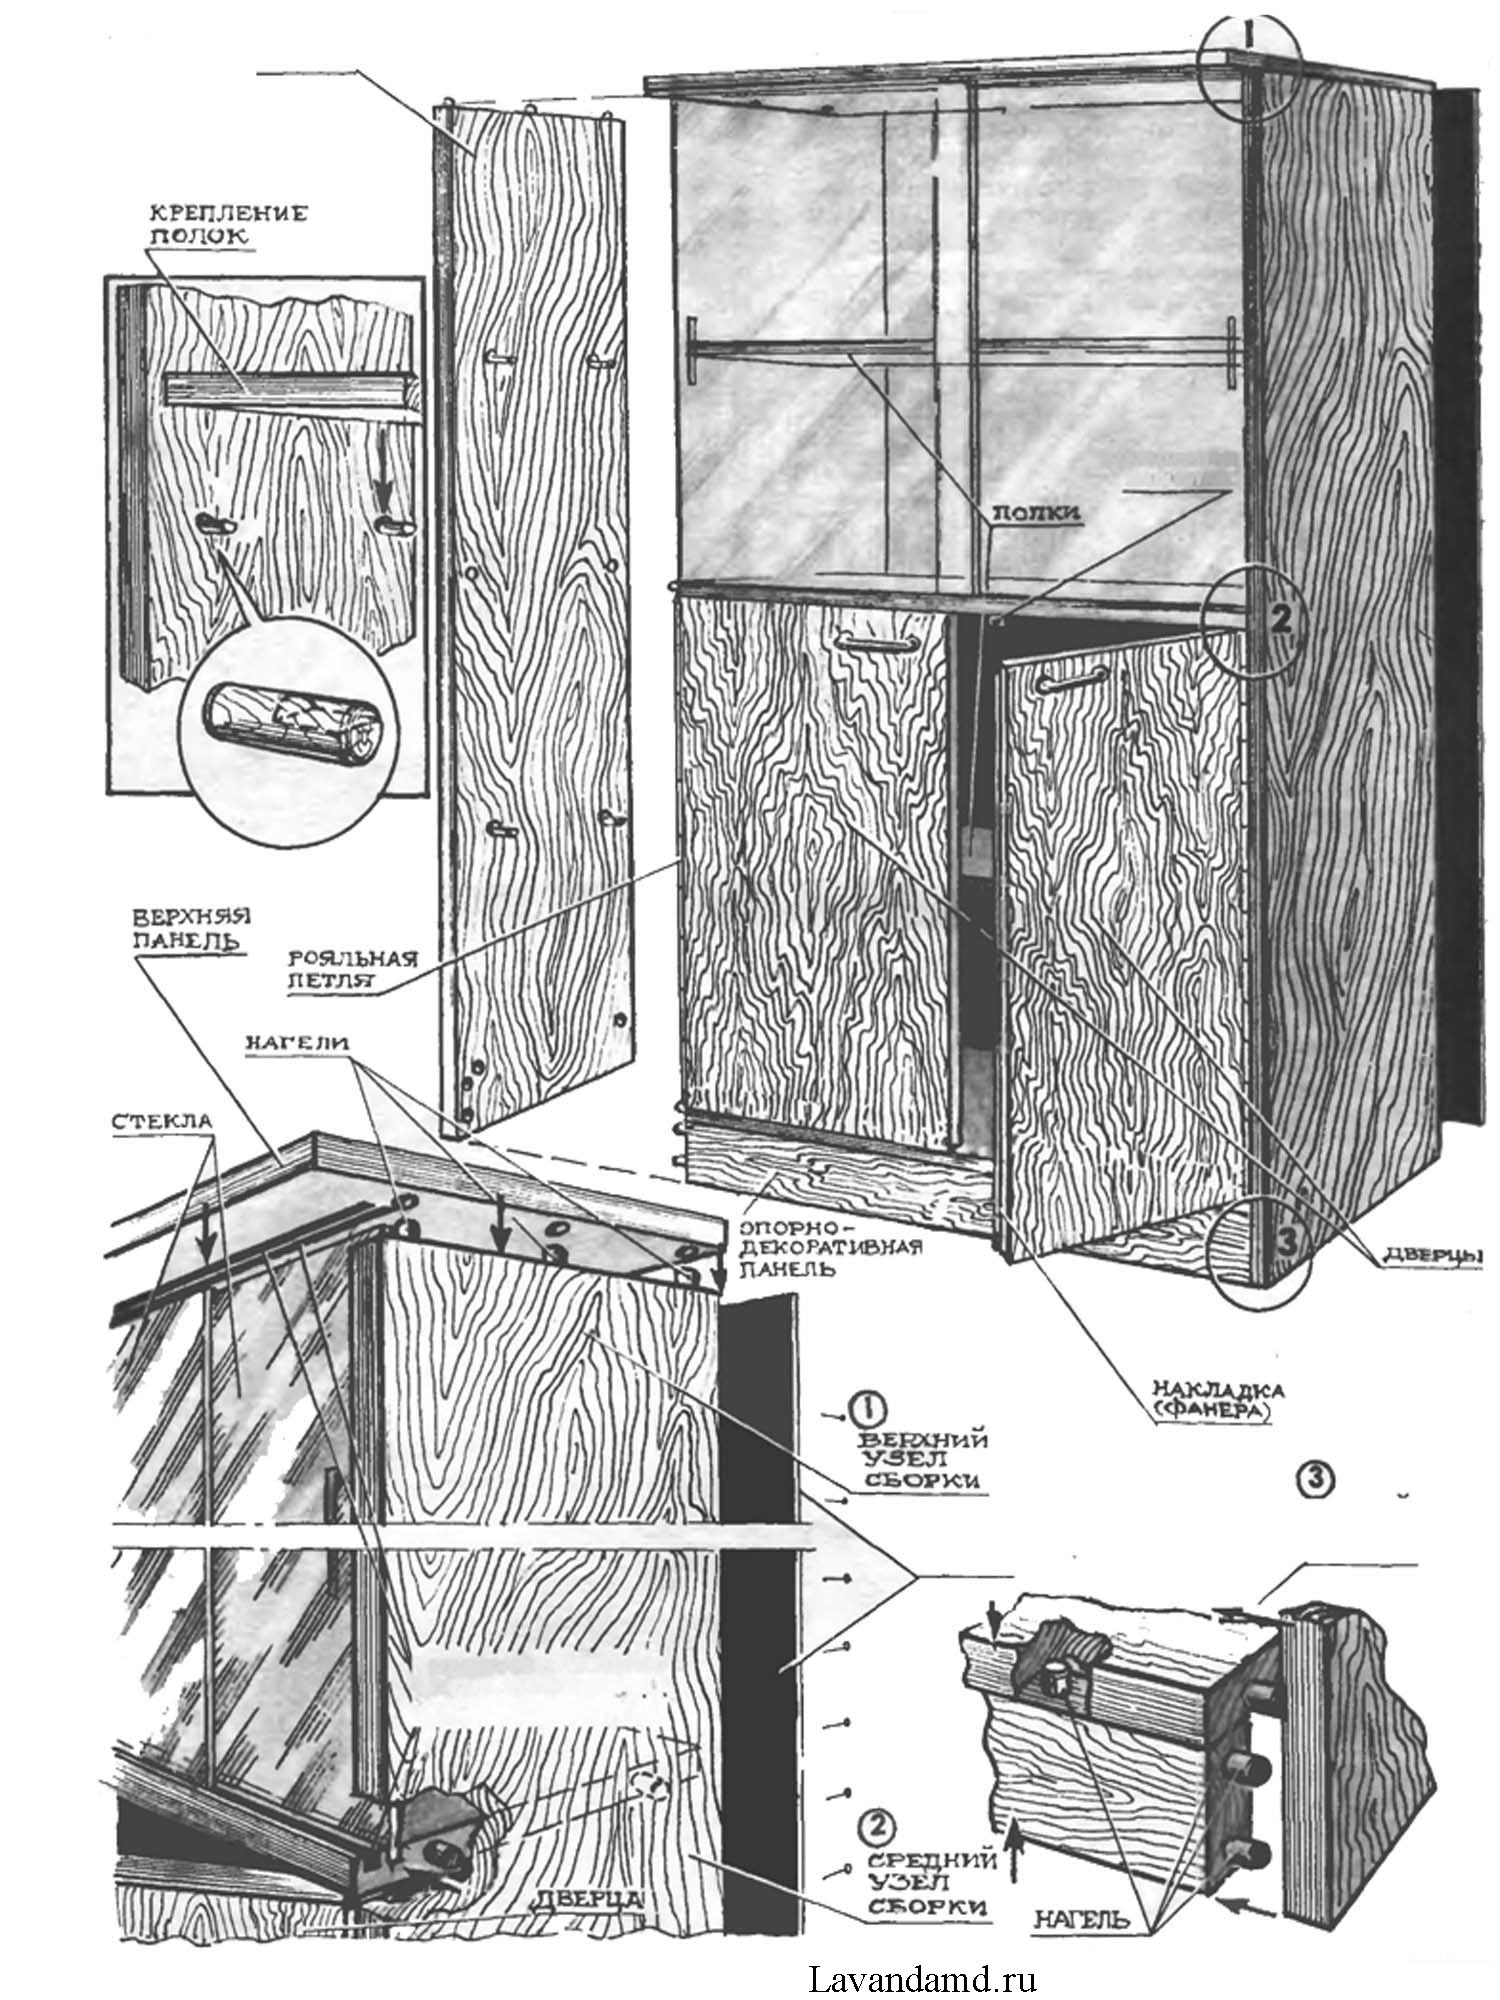 Как починить дверцу шкафа если болты вырвались вместе с частью дерева